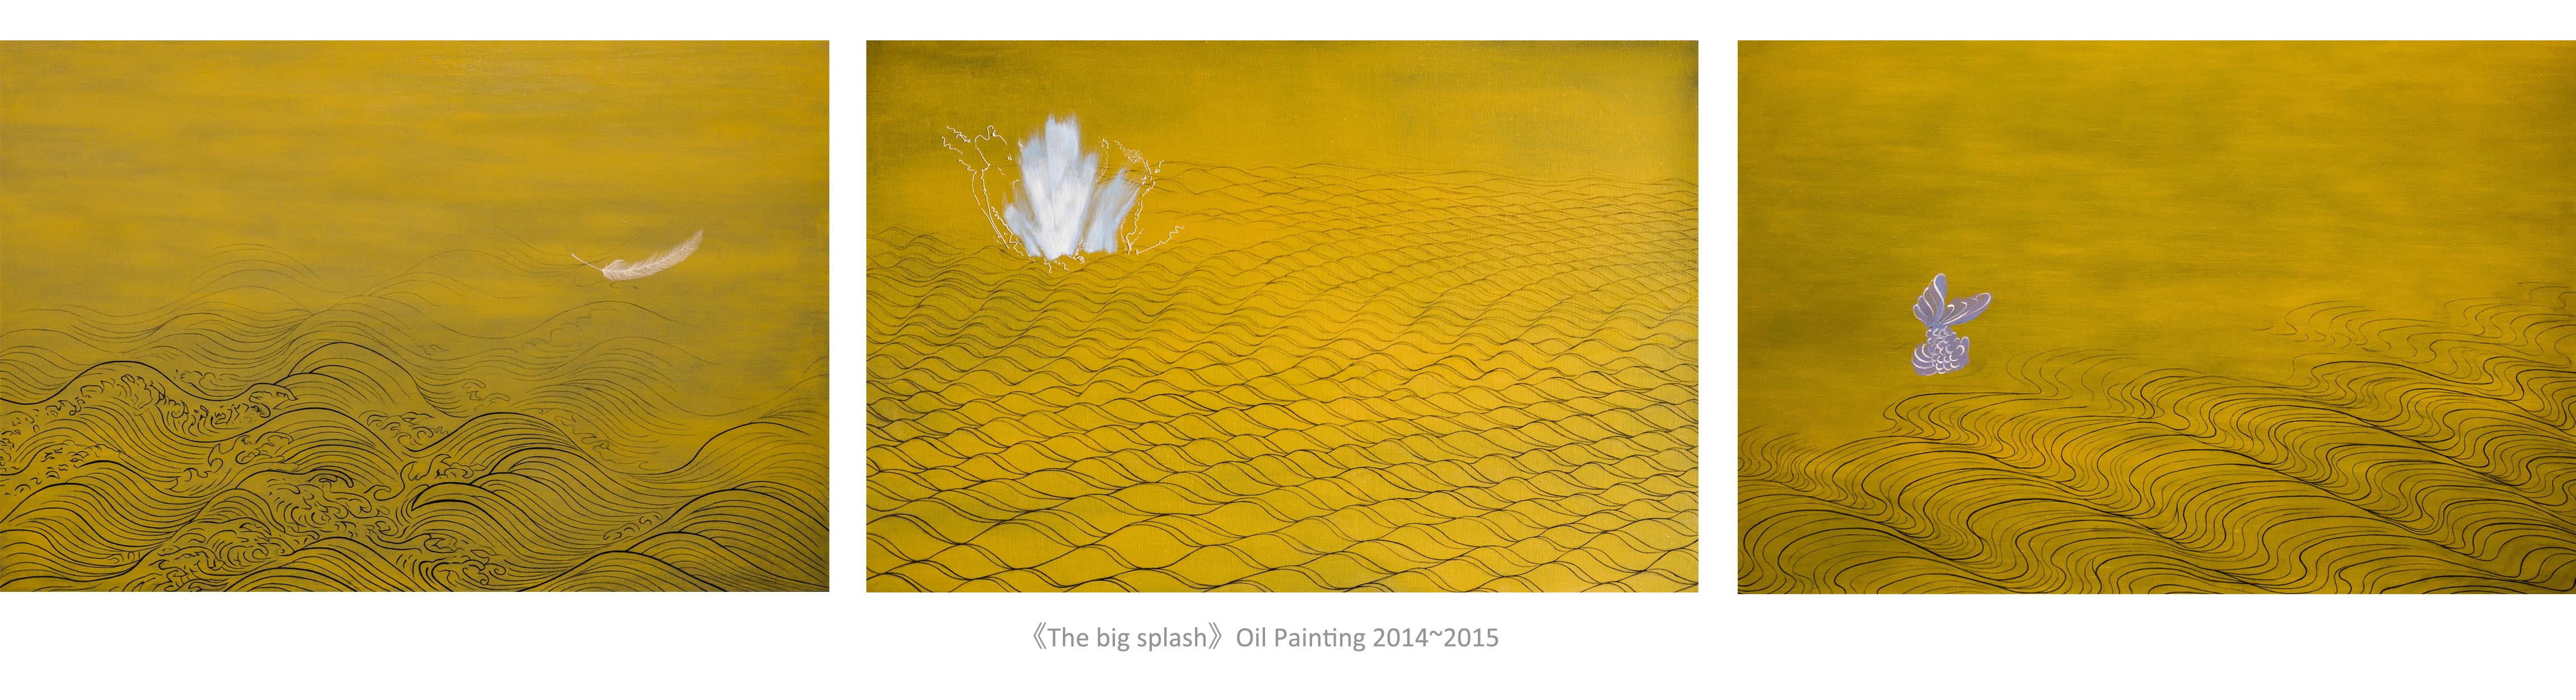 《花水大》布面油画 每张150cm100cm 共3张 2015年